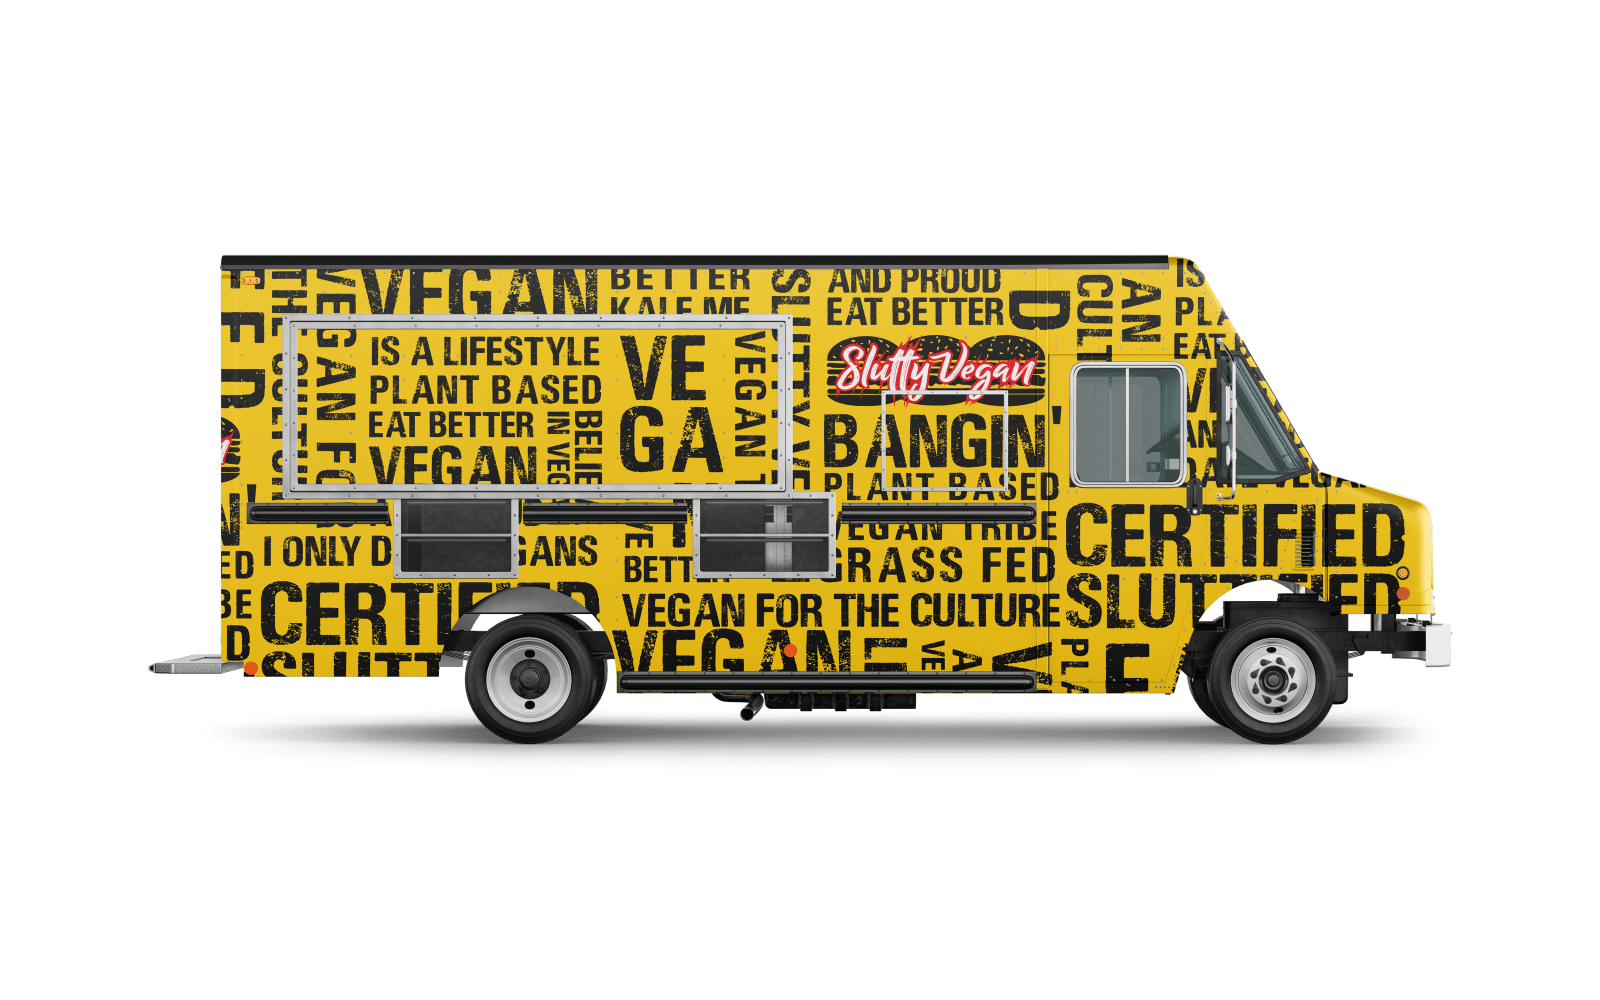 Tie Breakers Food Truck - Greenville, NC - Food Truck